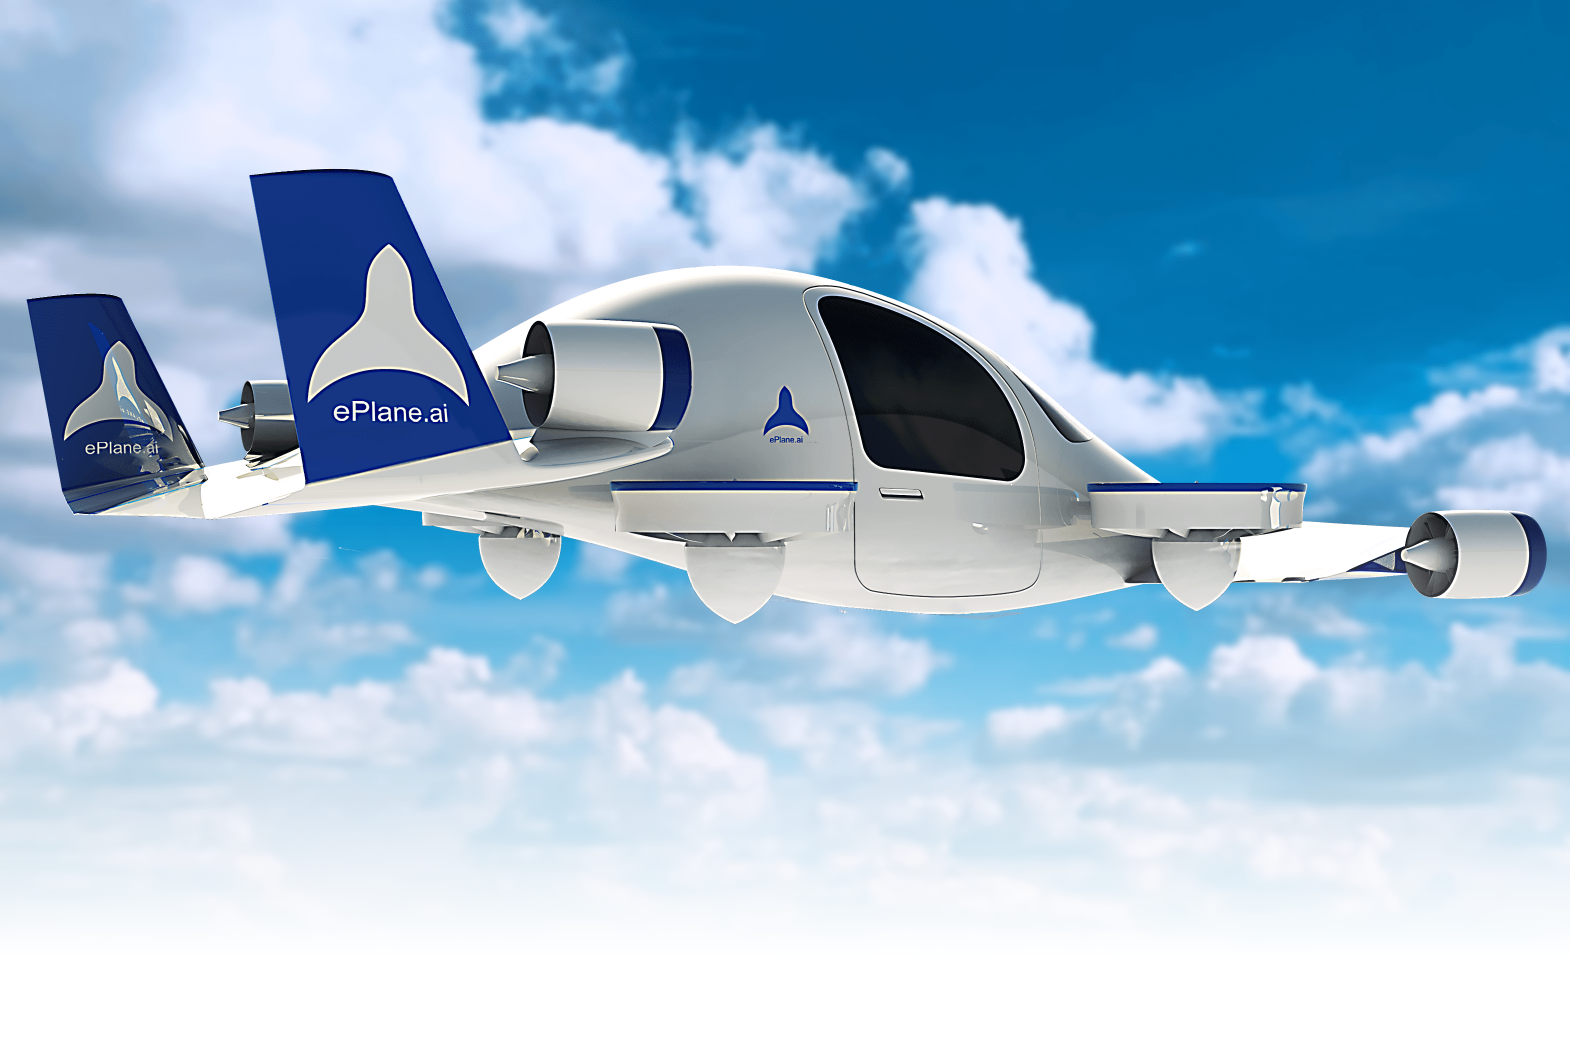 Grunnleggeren av ePlane sa at selskapet planlegger å lansere den første prototypen av flytaxien innen utgangen av 2024, og lansere fullskala kommersialisering i India i 2027